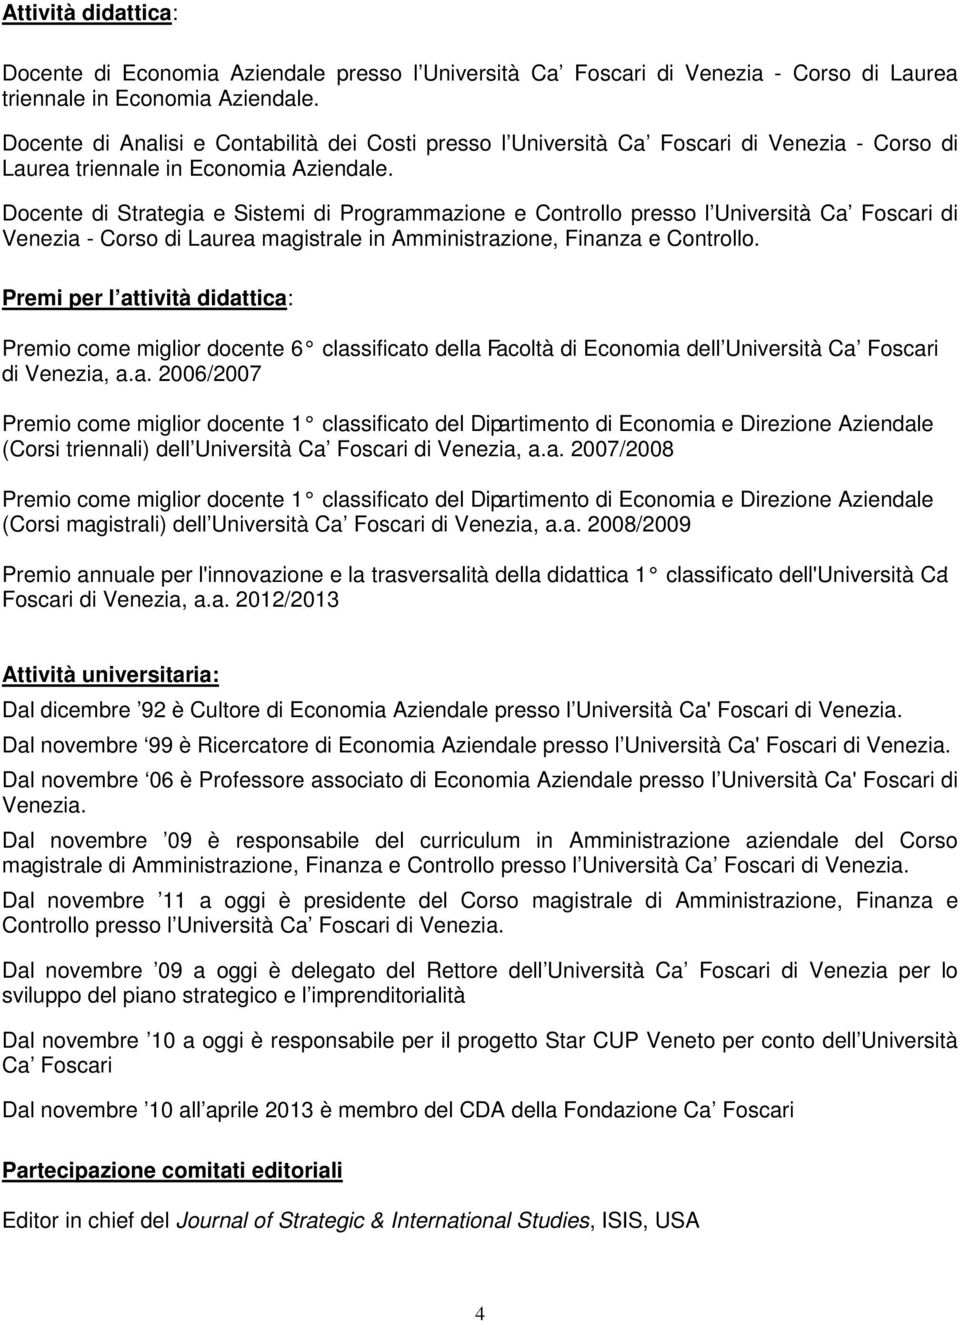 Docente di Strategia e Sistemi di Programmazione e Controllo presso l Università Ca Foscari di Venezia - Corso di Laurea magistrale in Amministrazione, Finanza e Controllo.